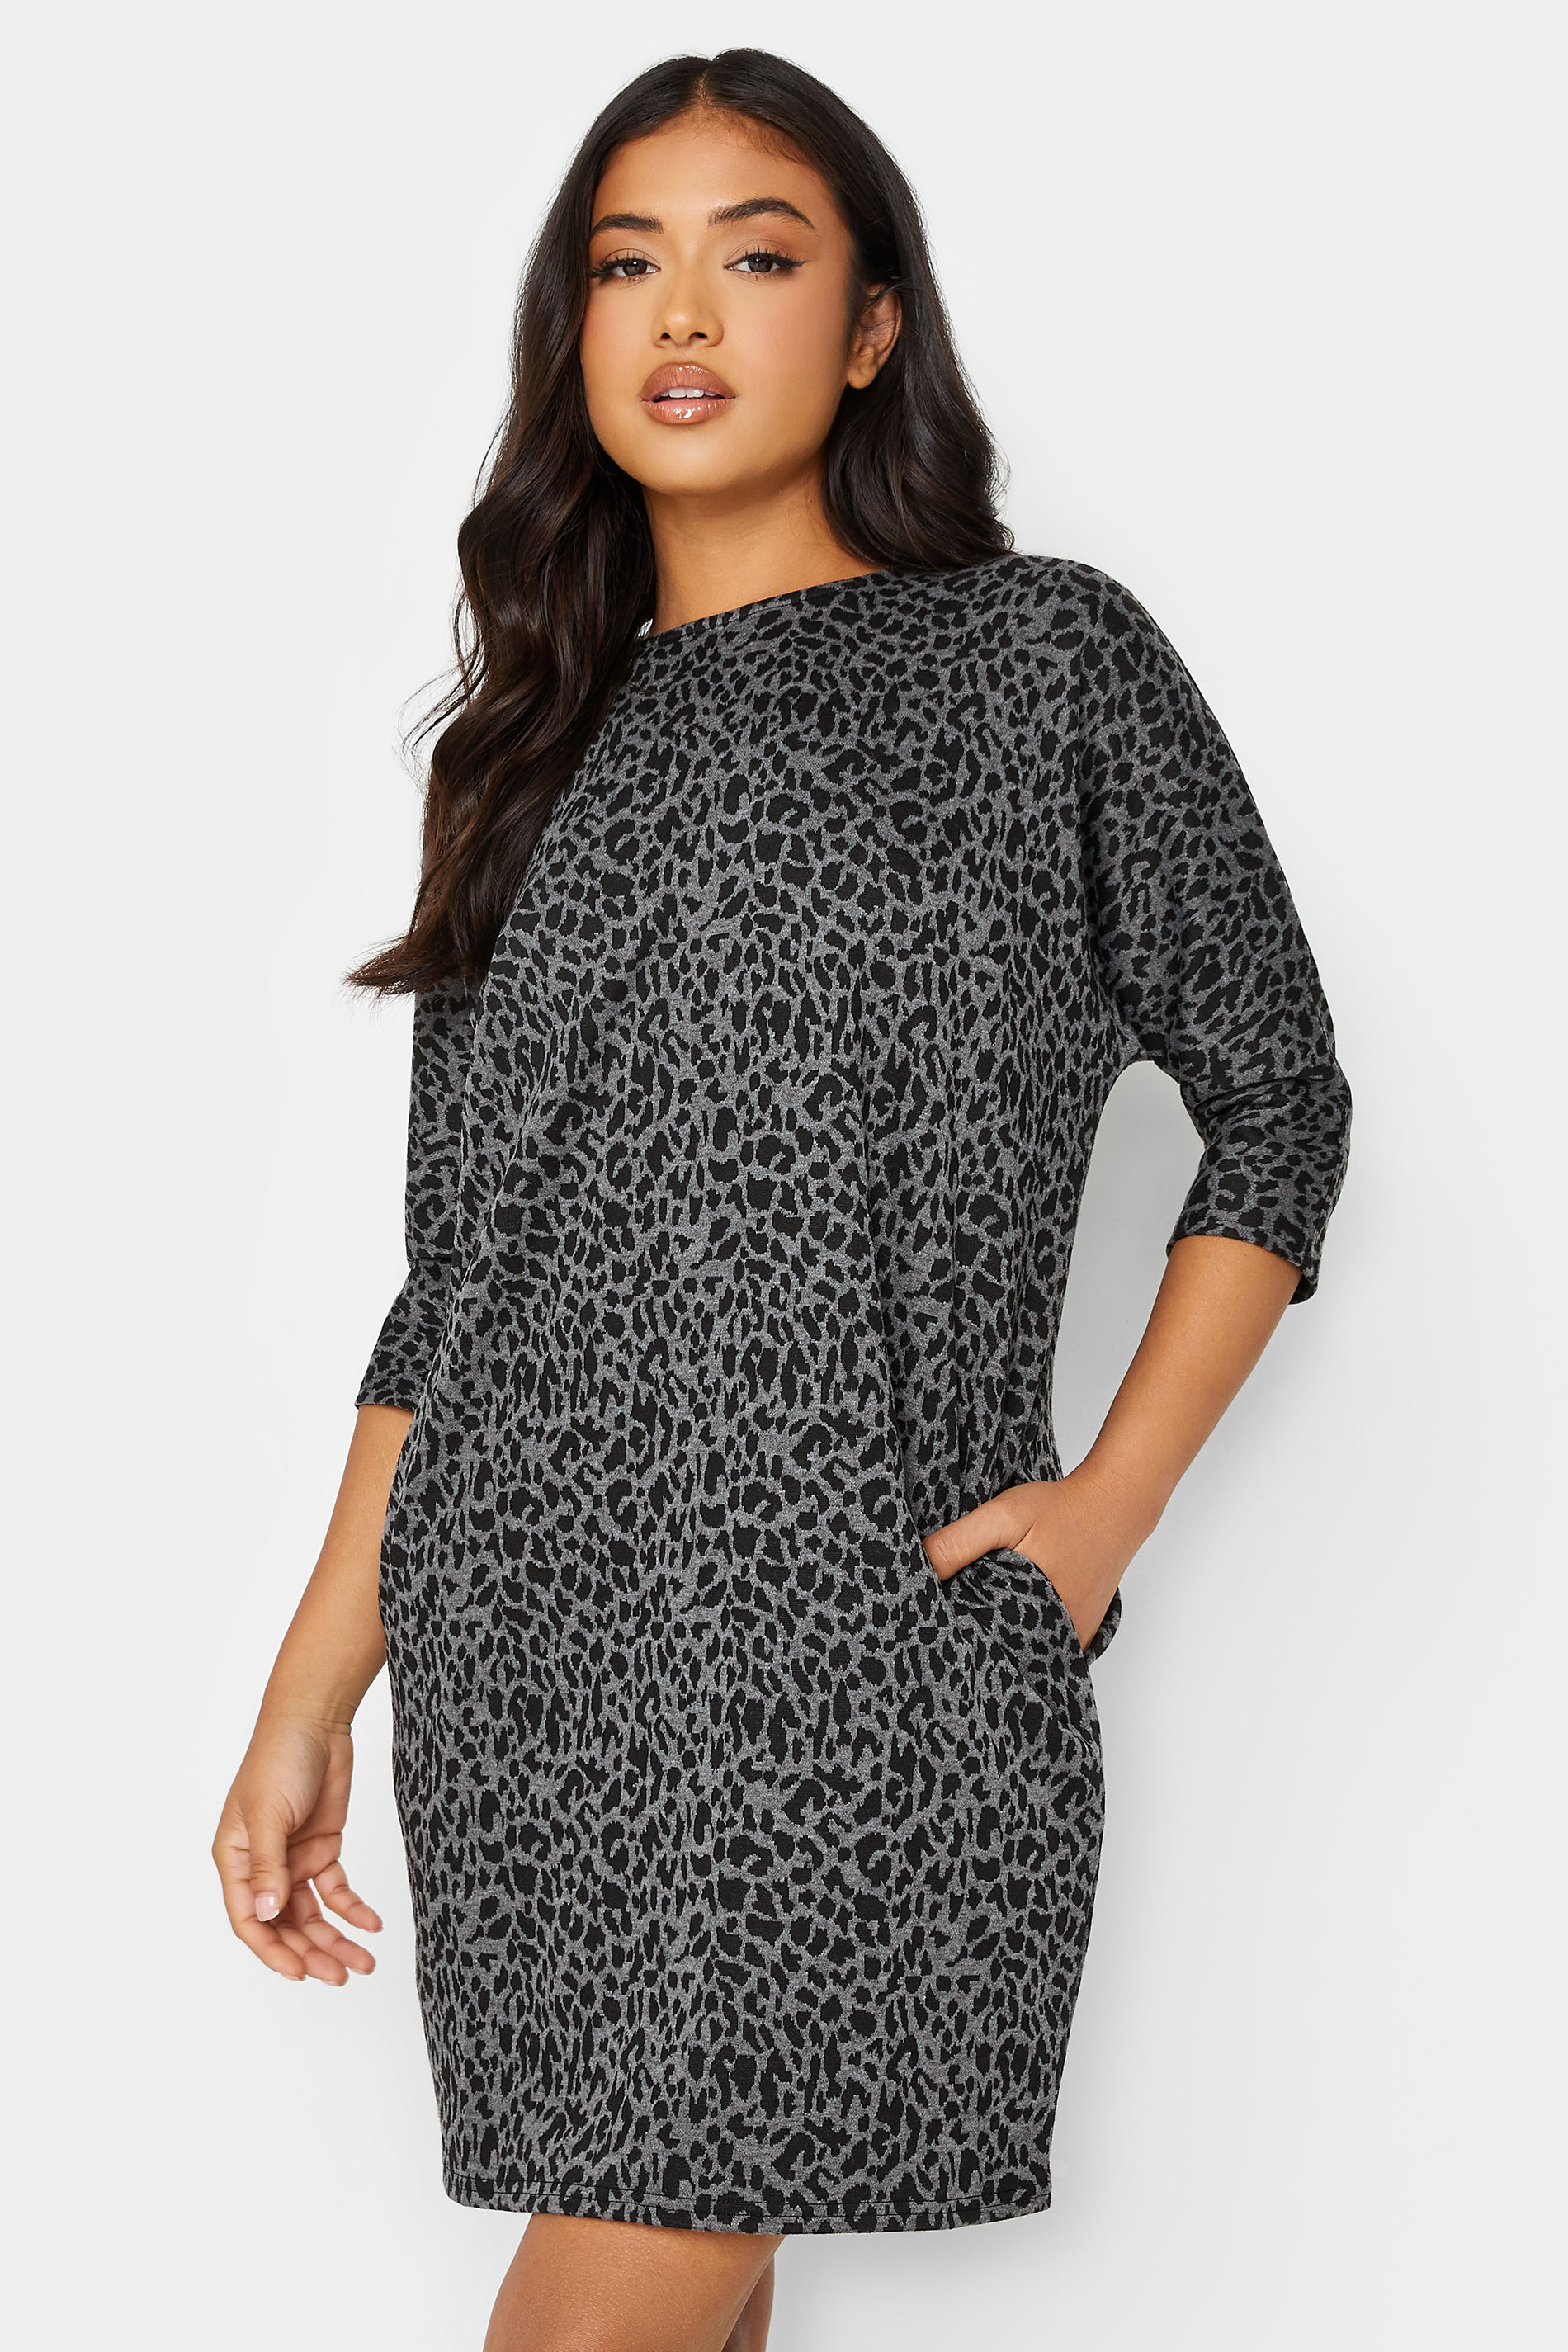 Petite Grey & Black Leopard Print Tunic Dress | PixieGirl  1